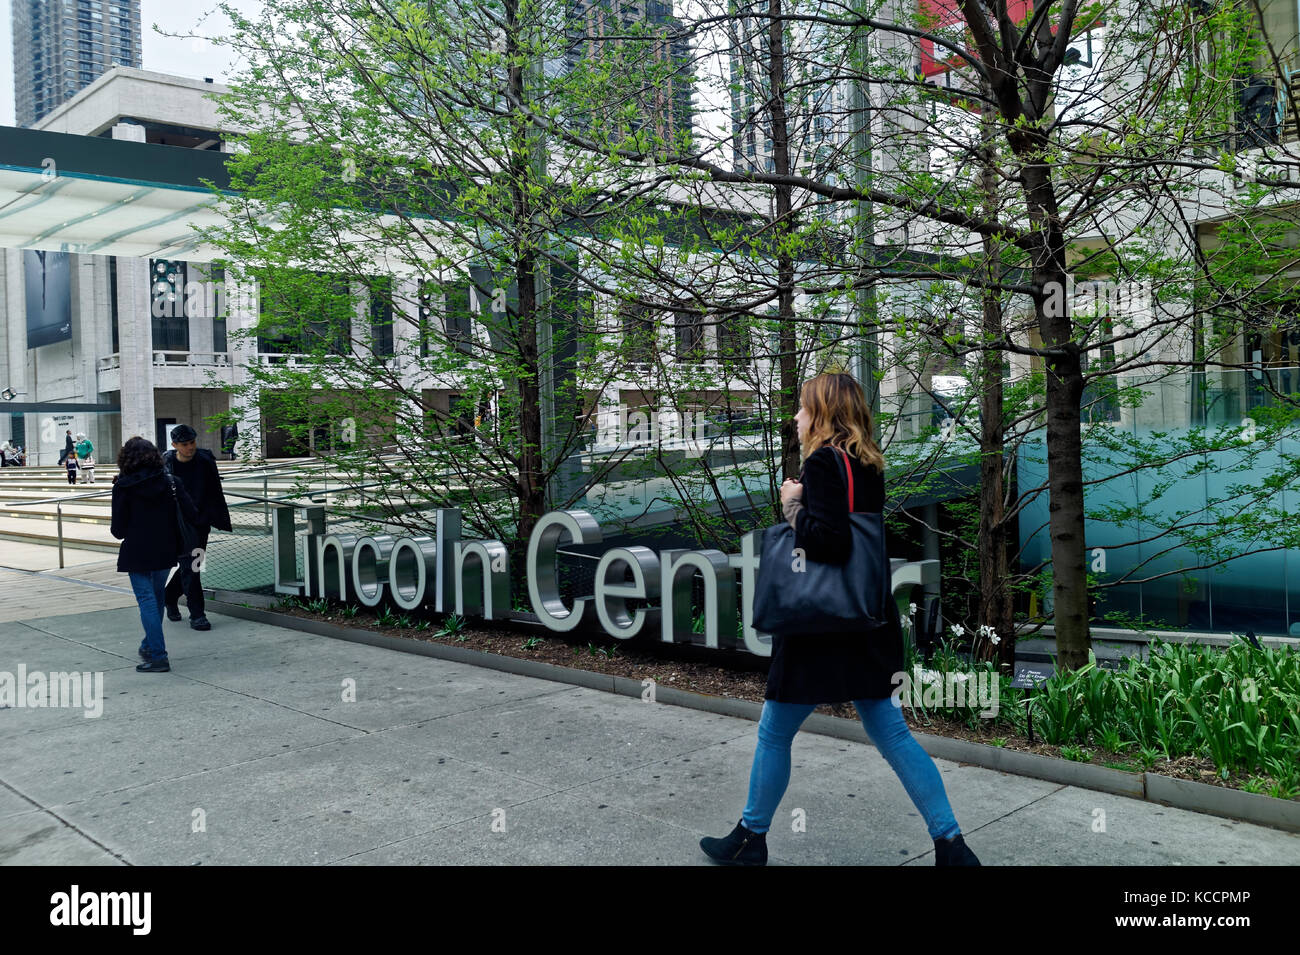 Eingang und melden Sie am Lincoln Center für darstellende Künste in Manhattan, New York City. Stockfoto